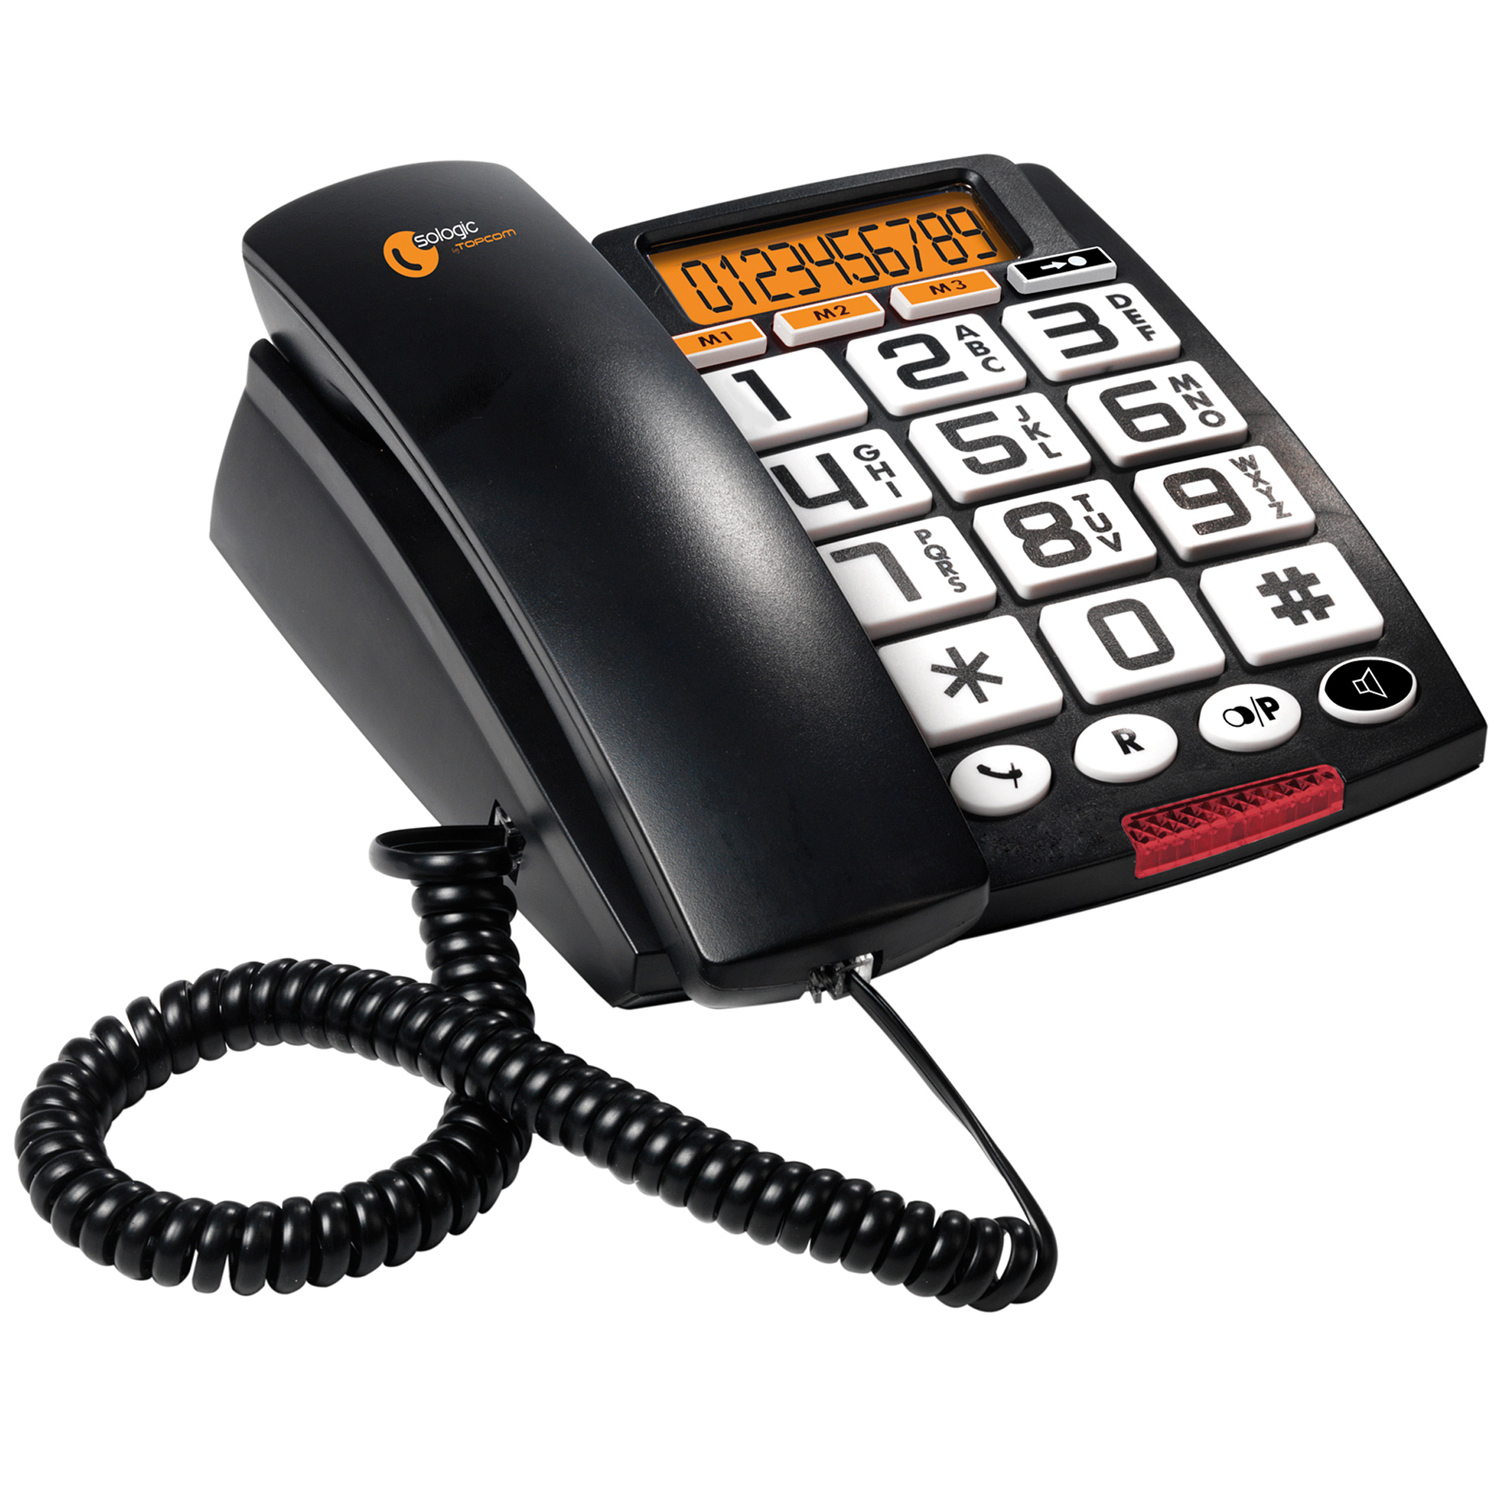 Громкий телефон для слабослышащих. Телефон Topcom 150. Телефон Topcom Allure 200. Радиотелефон для слабовидящих. Стационарный мобильный телефон для пожилых людей.